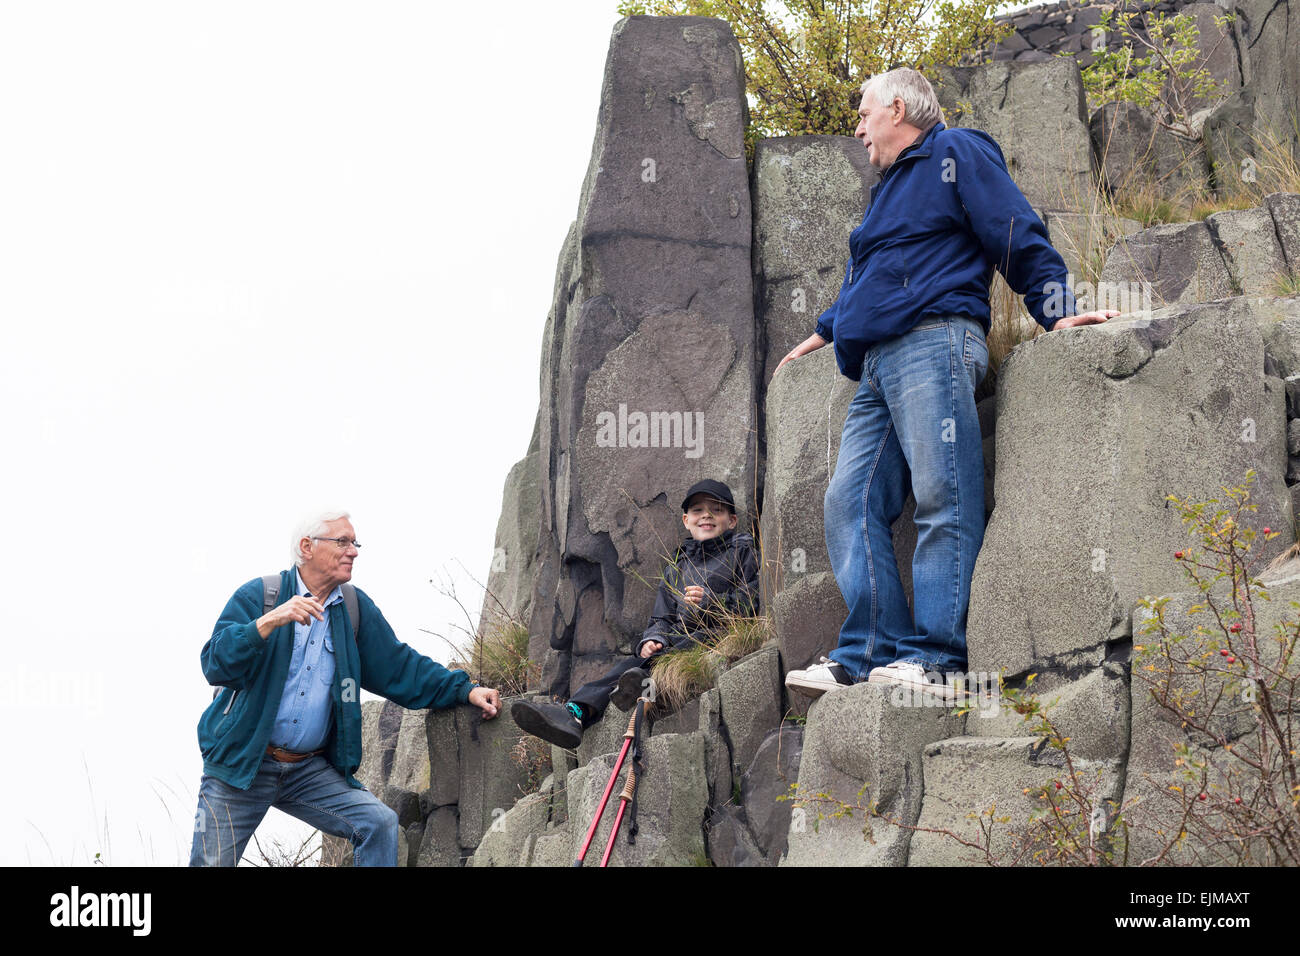 Ältere Männer mit Kind junge trekking auf felsigem Gelände. Stockfoto